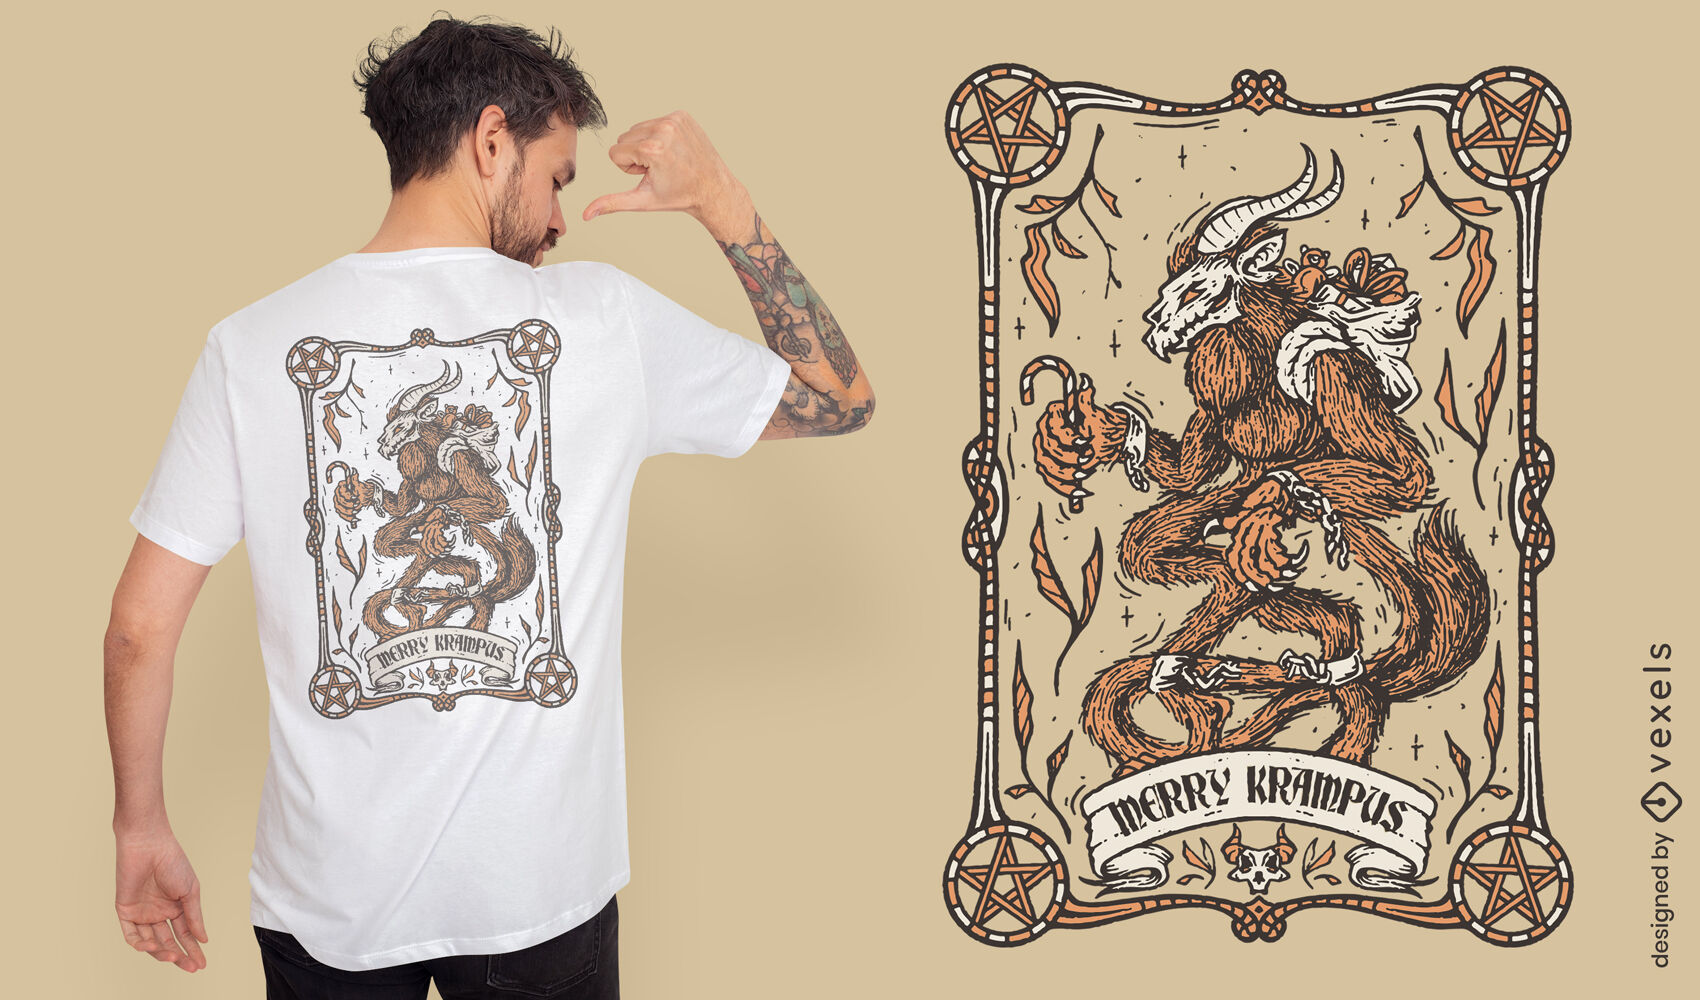 Merry Krampus t-shirt design